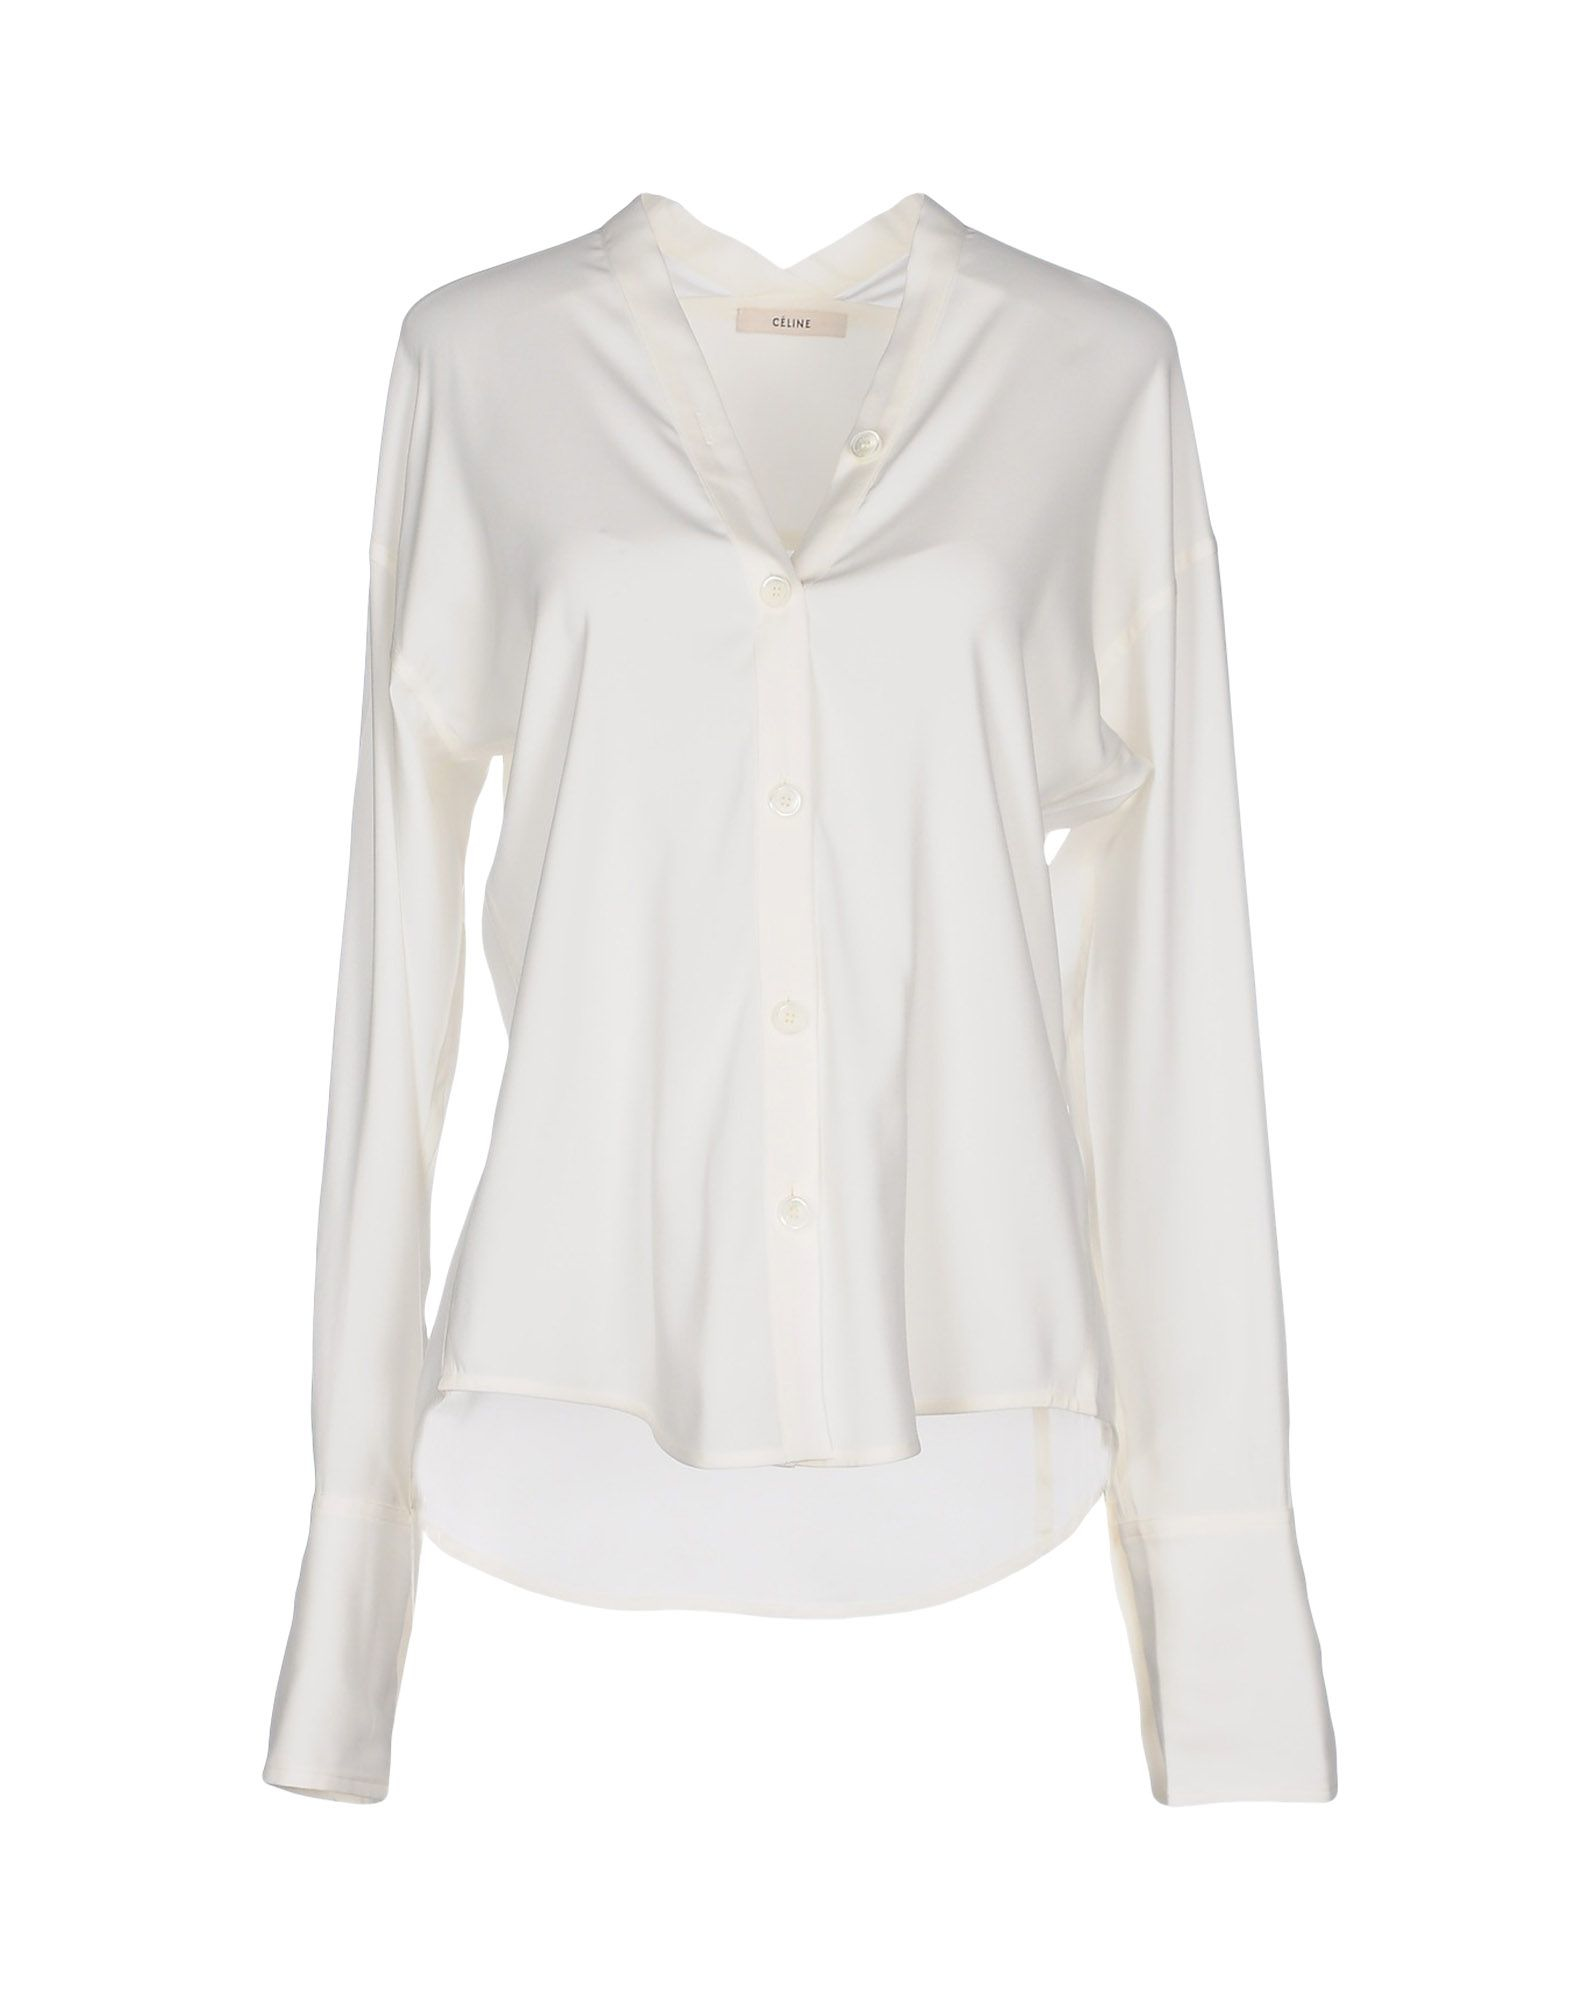 Celine Shirt in White (Ivory) | Lyst